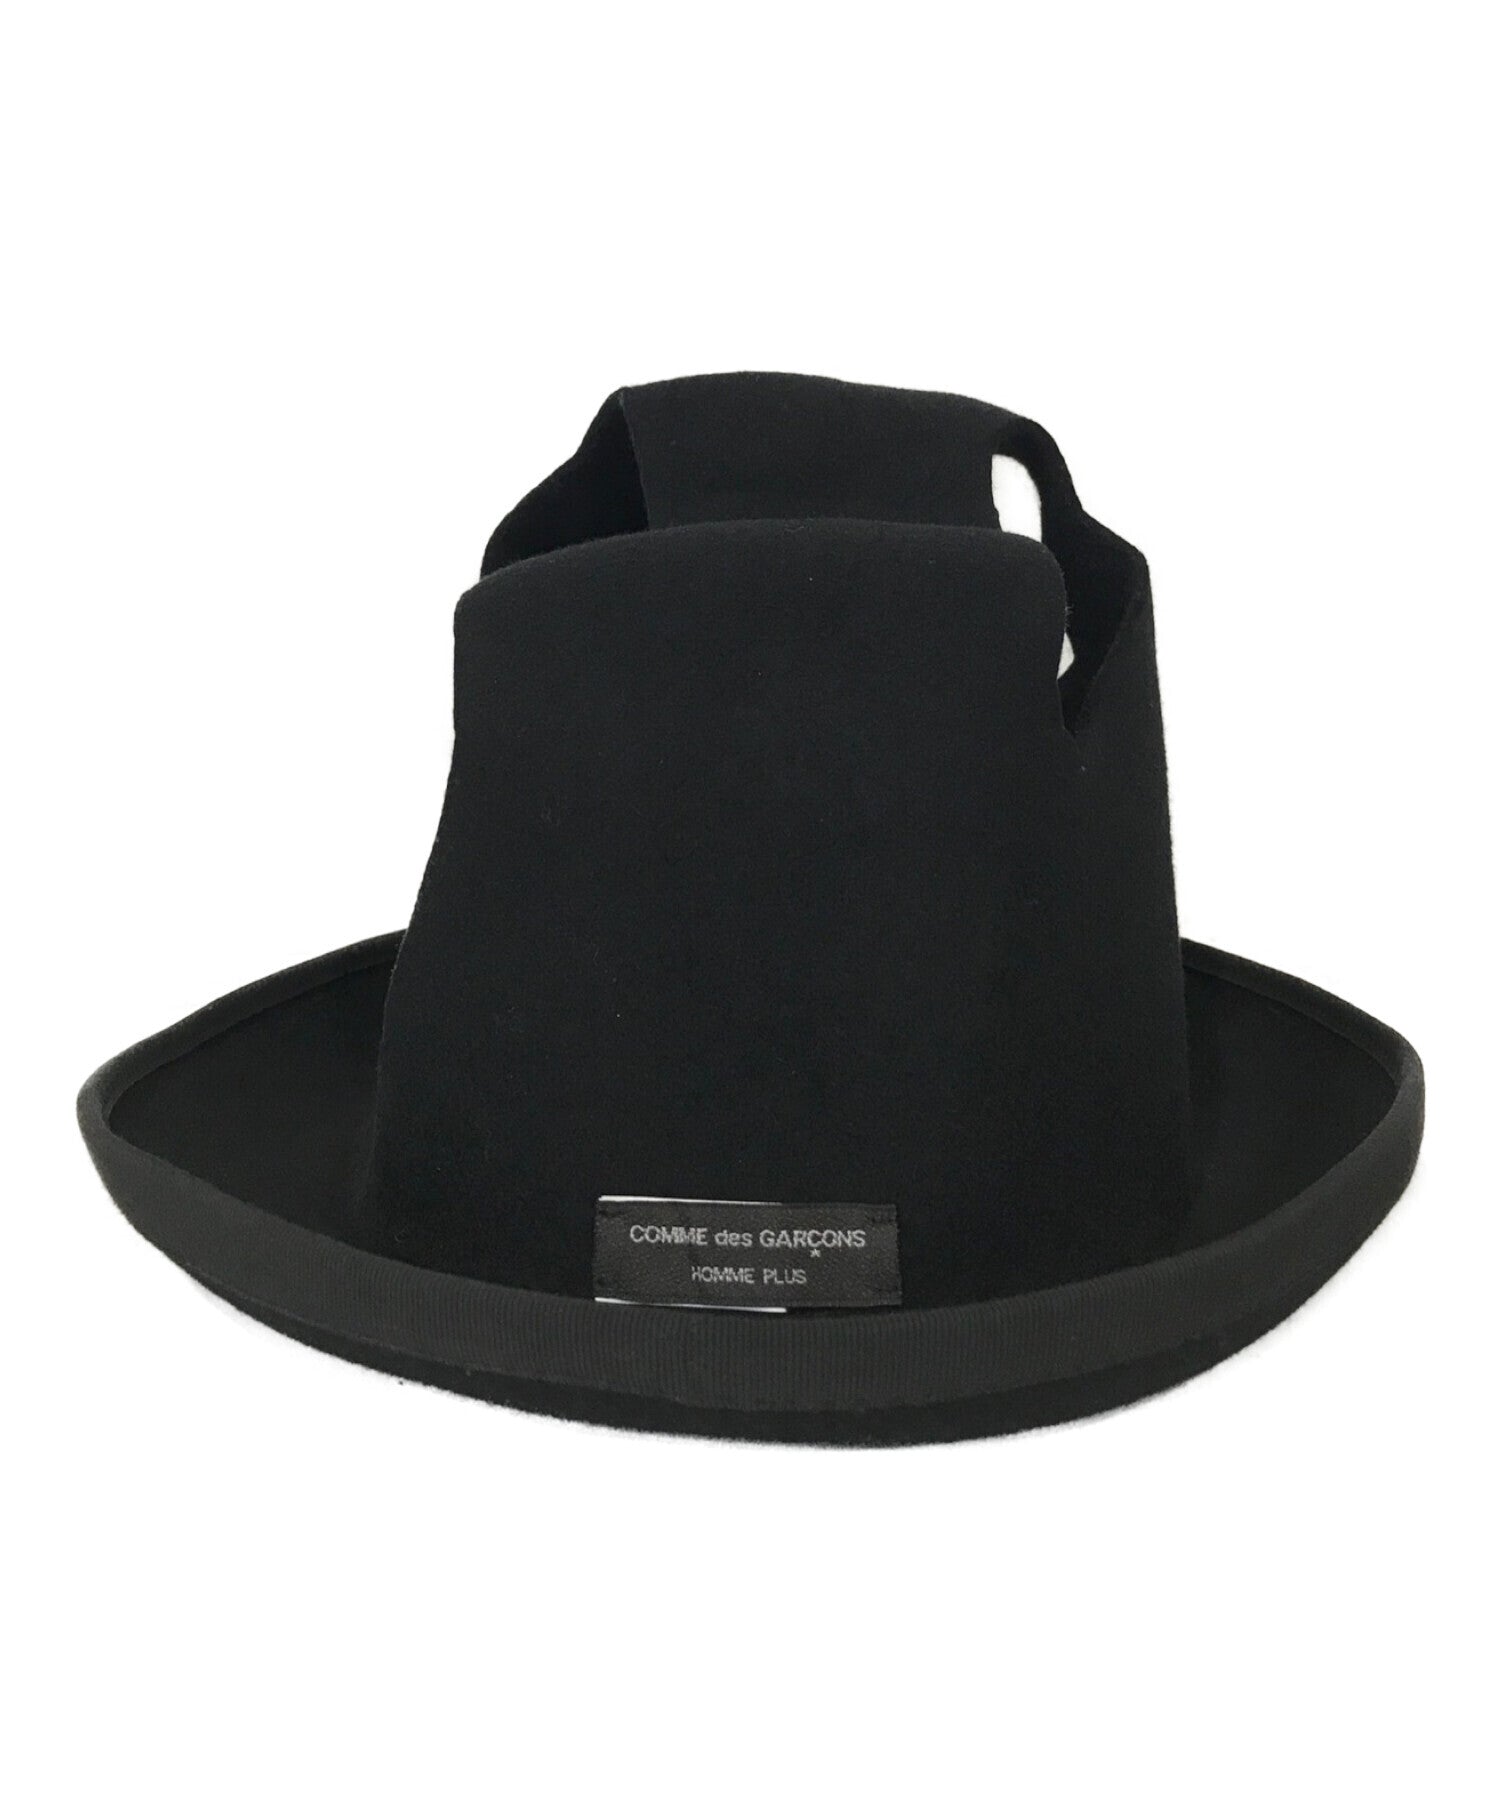 COMME des GARCONS HOMME PLUS wool hat | Archive Factory